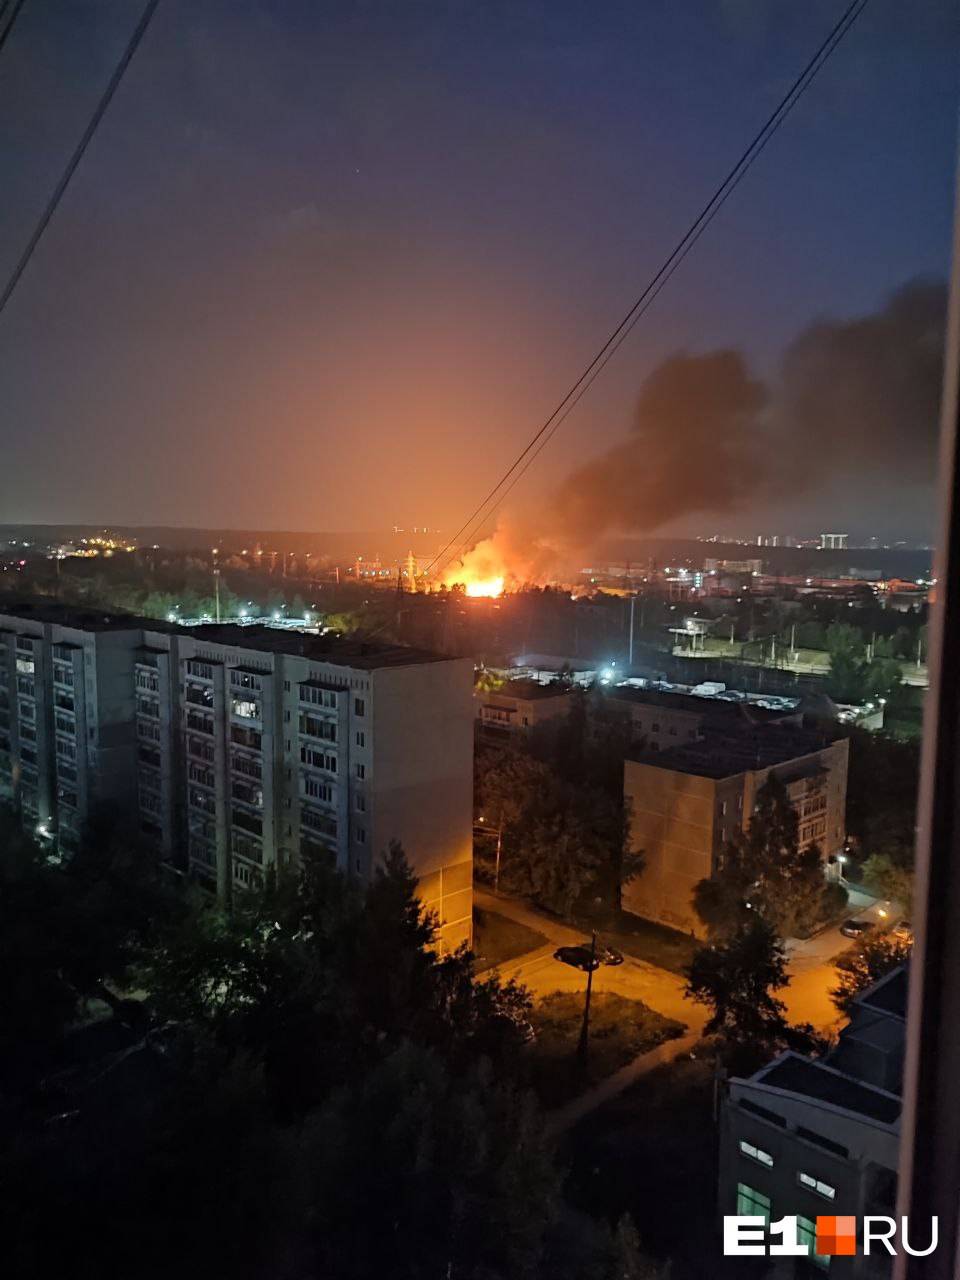 «Звуки взрывов все сильнее». В Екатеринбурге вспыхнул мощный пожар: видео